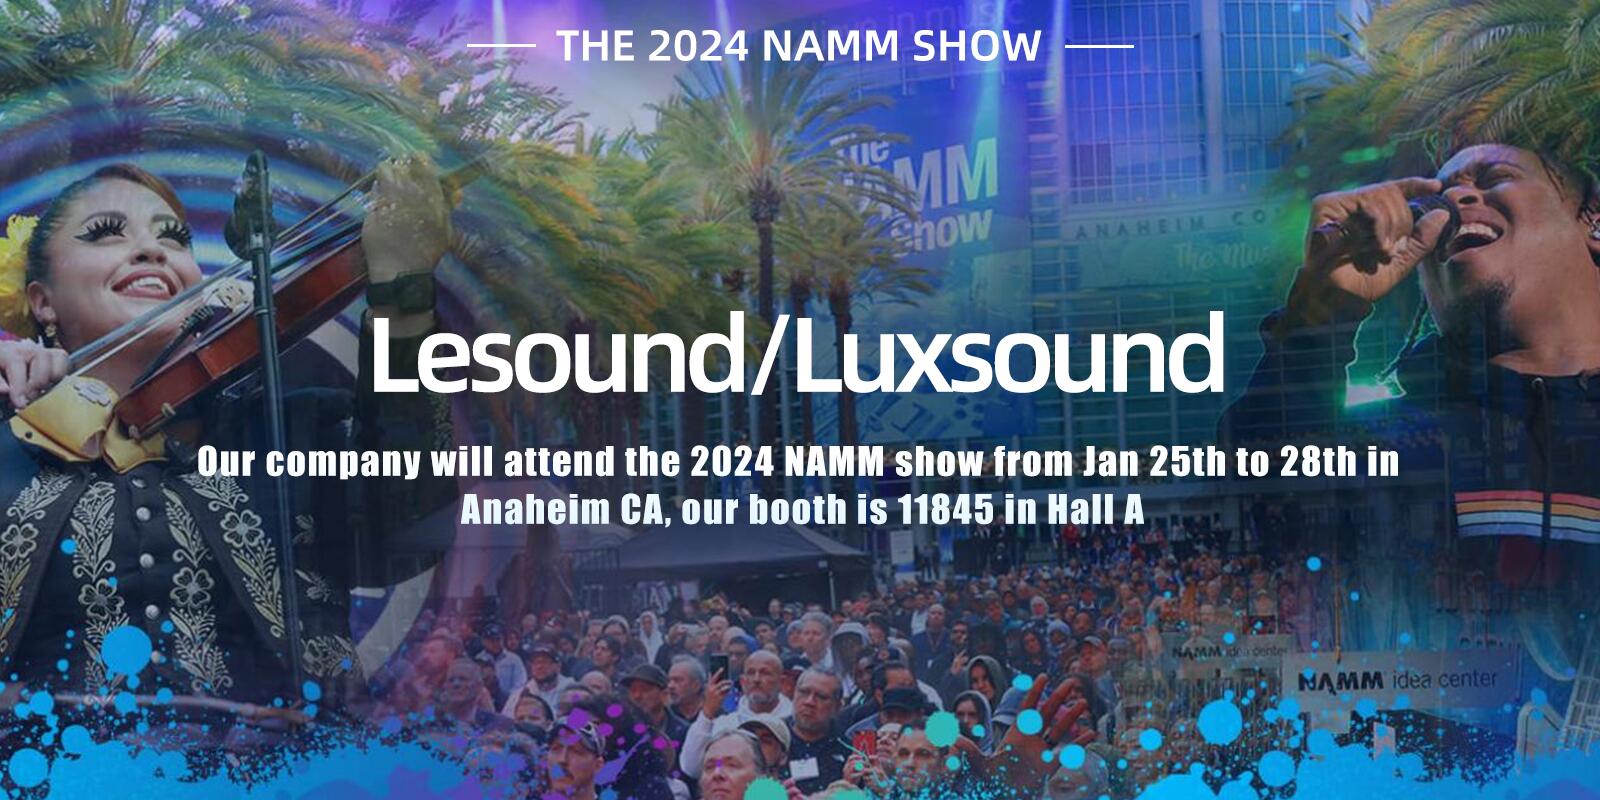 Lesound/Luxsound Attendite Ad 2024 NAMM Monstra Ex Jan 25th Ad 28 in Anaheim CA